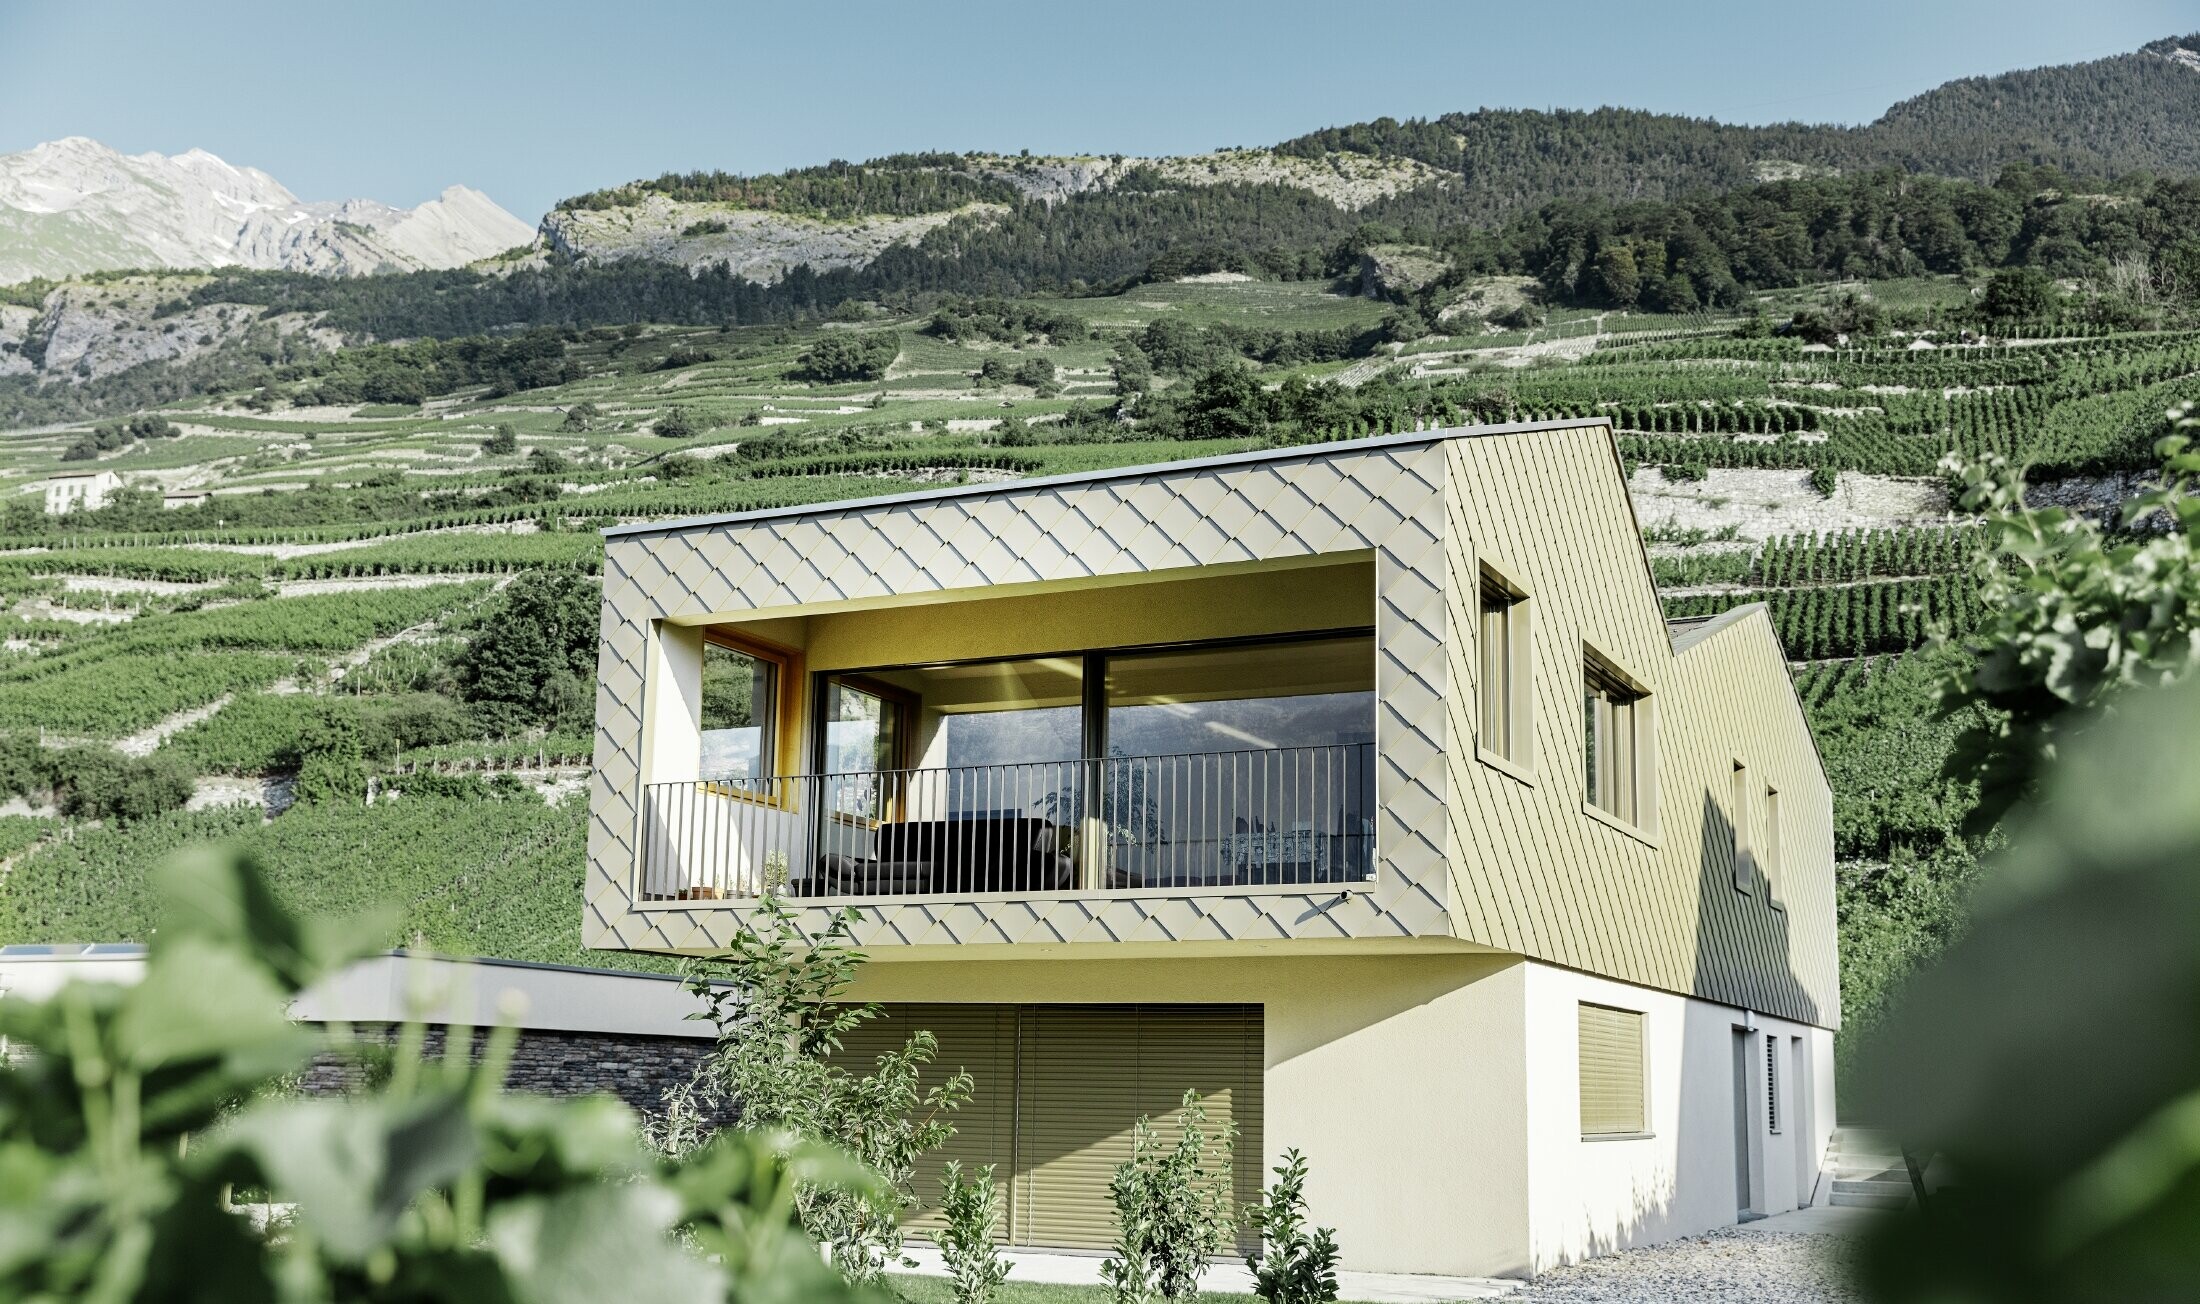 modernes Einfamilienhaus mitten in den Weinbergen des Rhônetals mit 4 unterschiedlichen Dachflächen und offener Galerie mit einer Rautenfassade in bronze